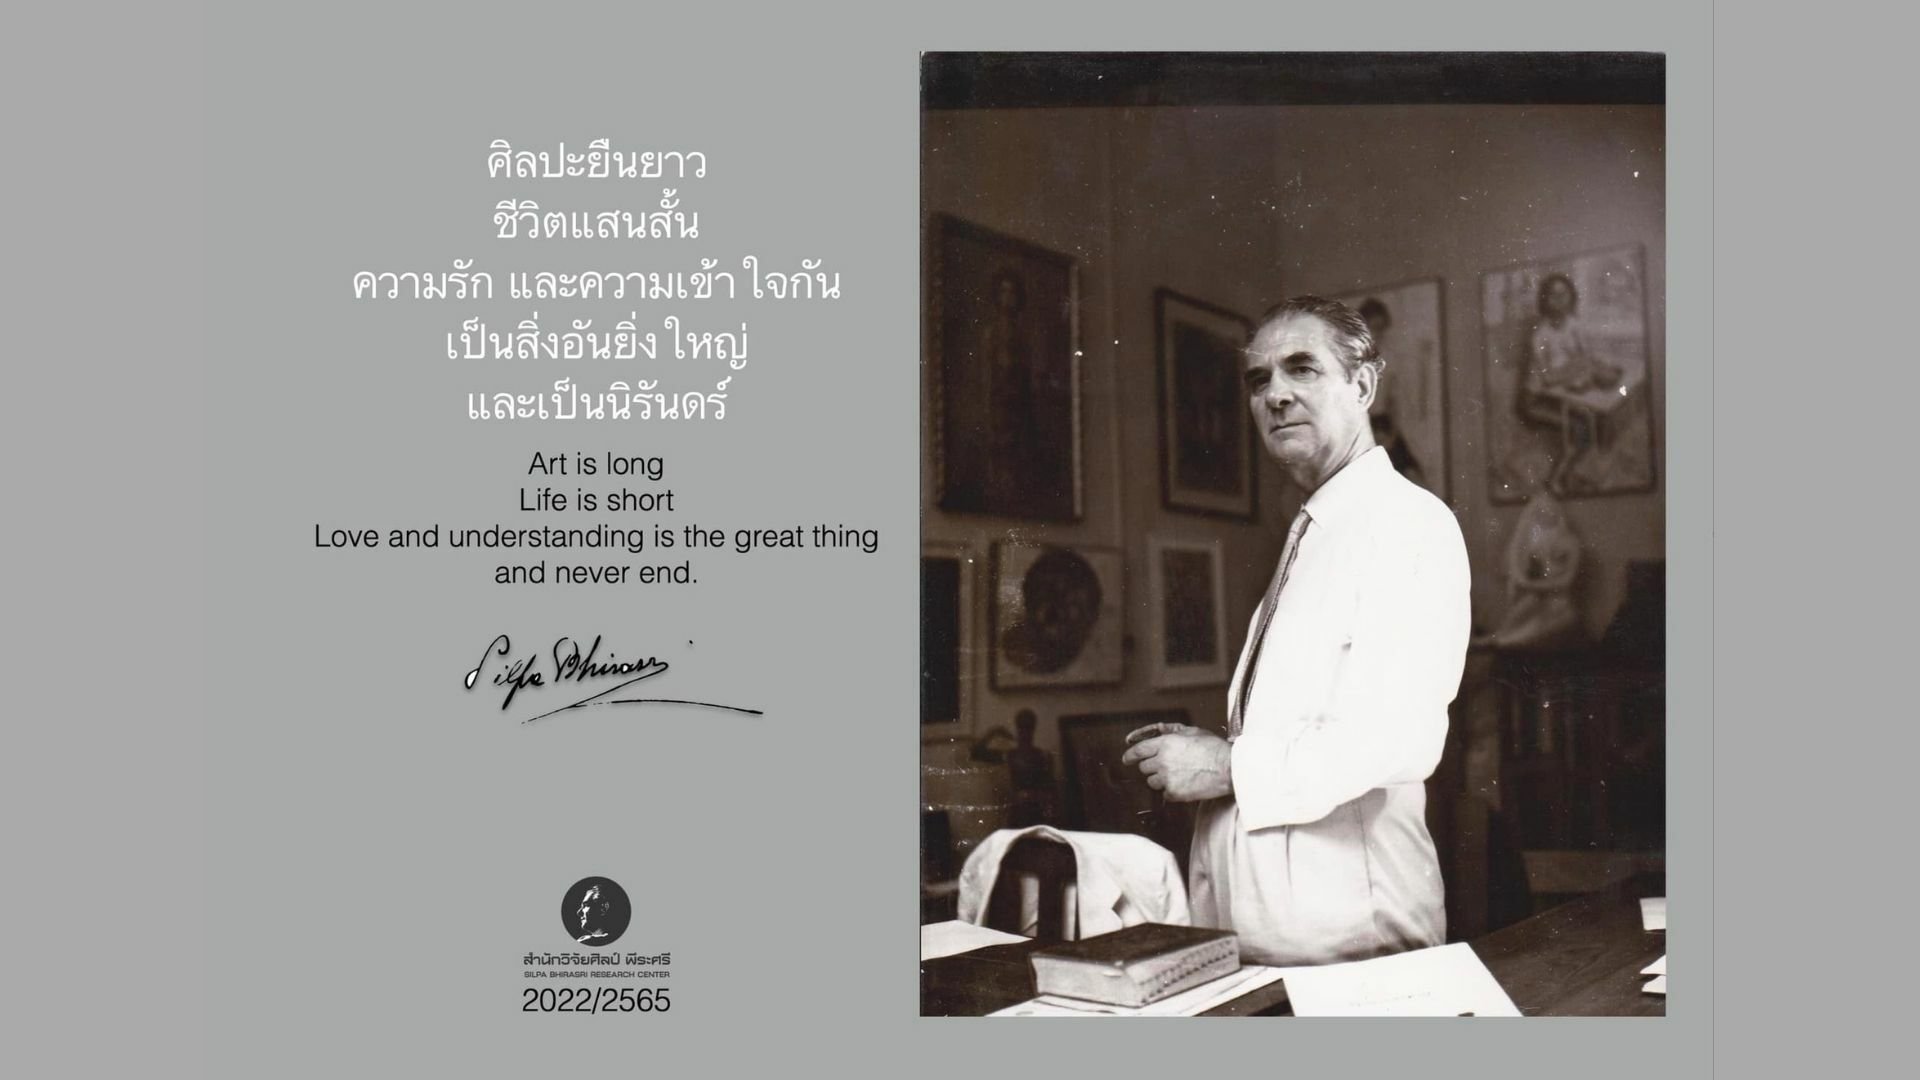 คําคม ศิลป์ พีระศรี ตำนานไม่จางหาย สอนใจถึงทุกวันนี้ | Thaiger ข่าวไทย